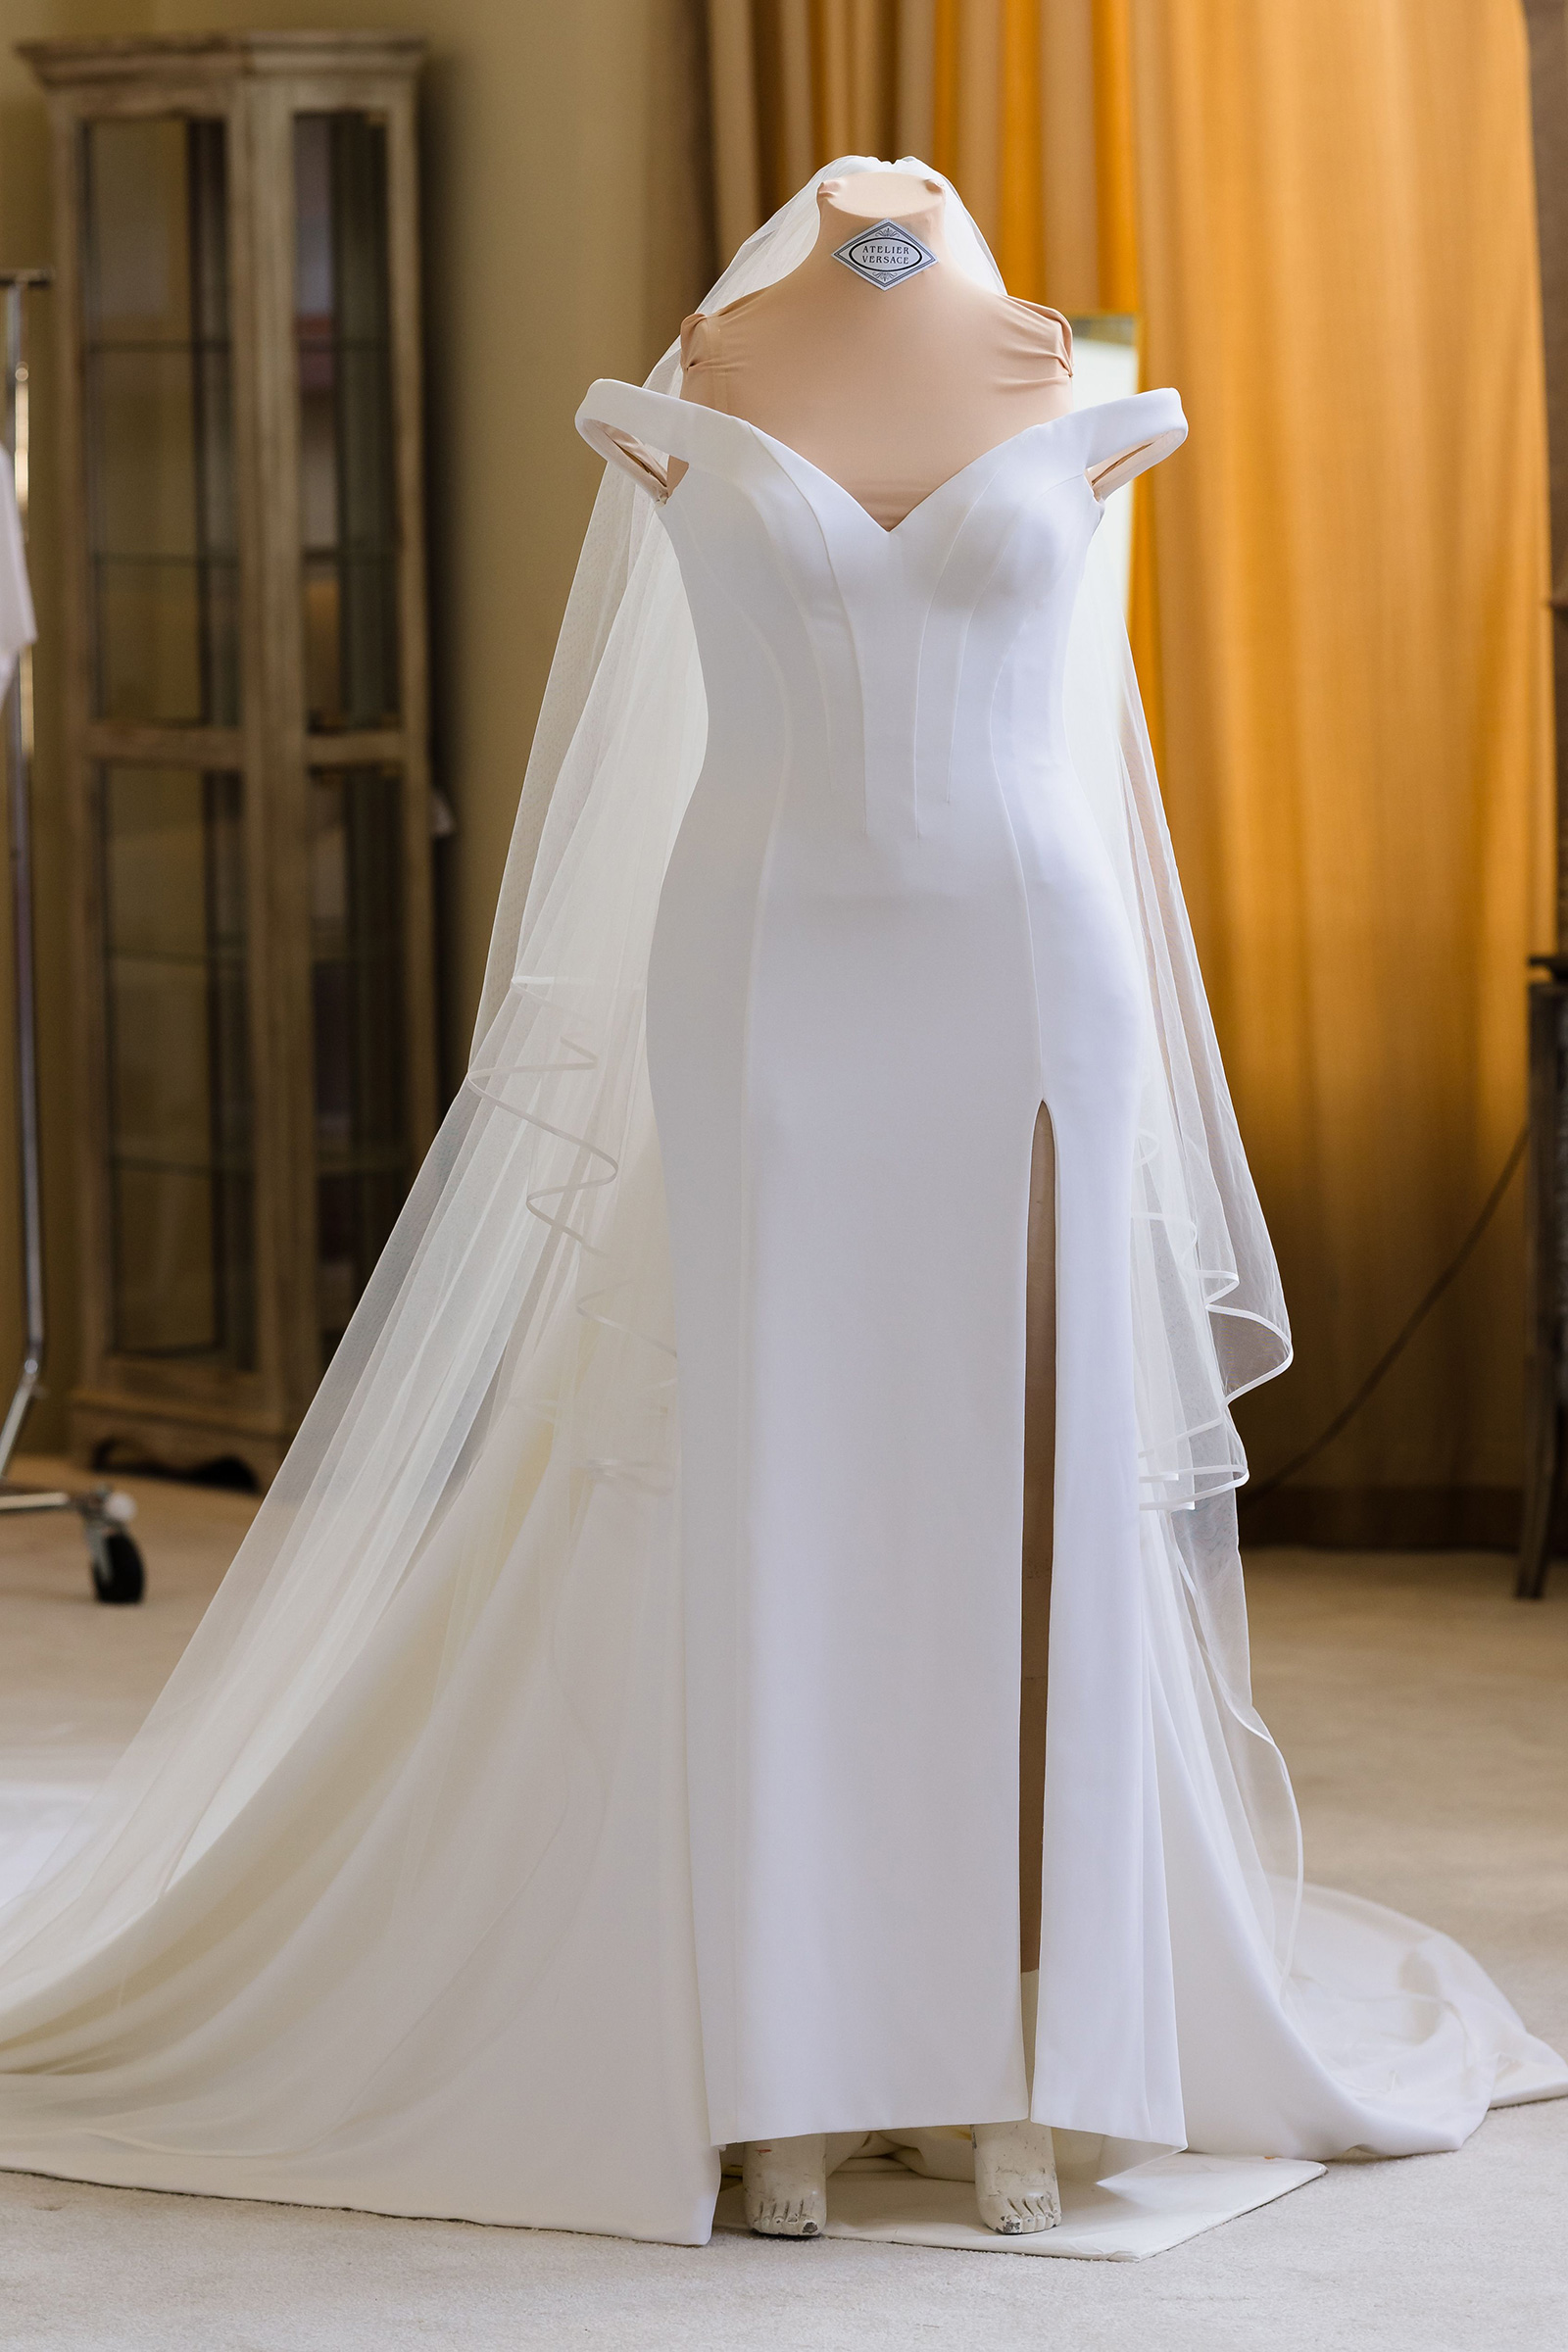 Ook smaak voorzetsel Pop star Britney Spears wears elegant Versace gown to wed Sam Asghari - CNN  Style